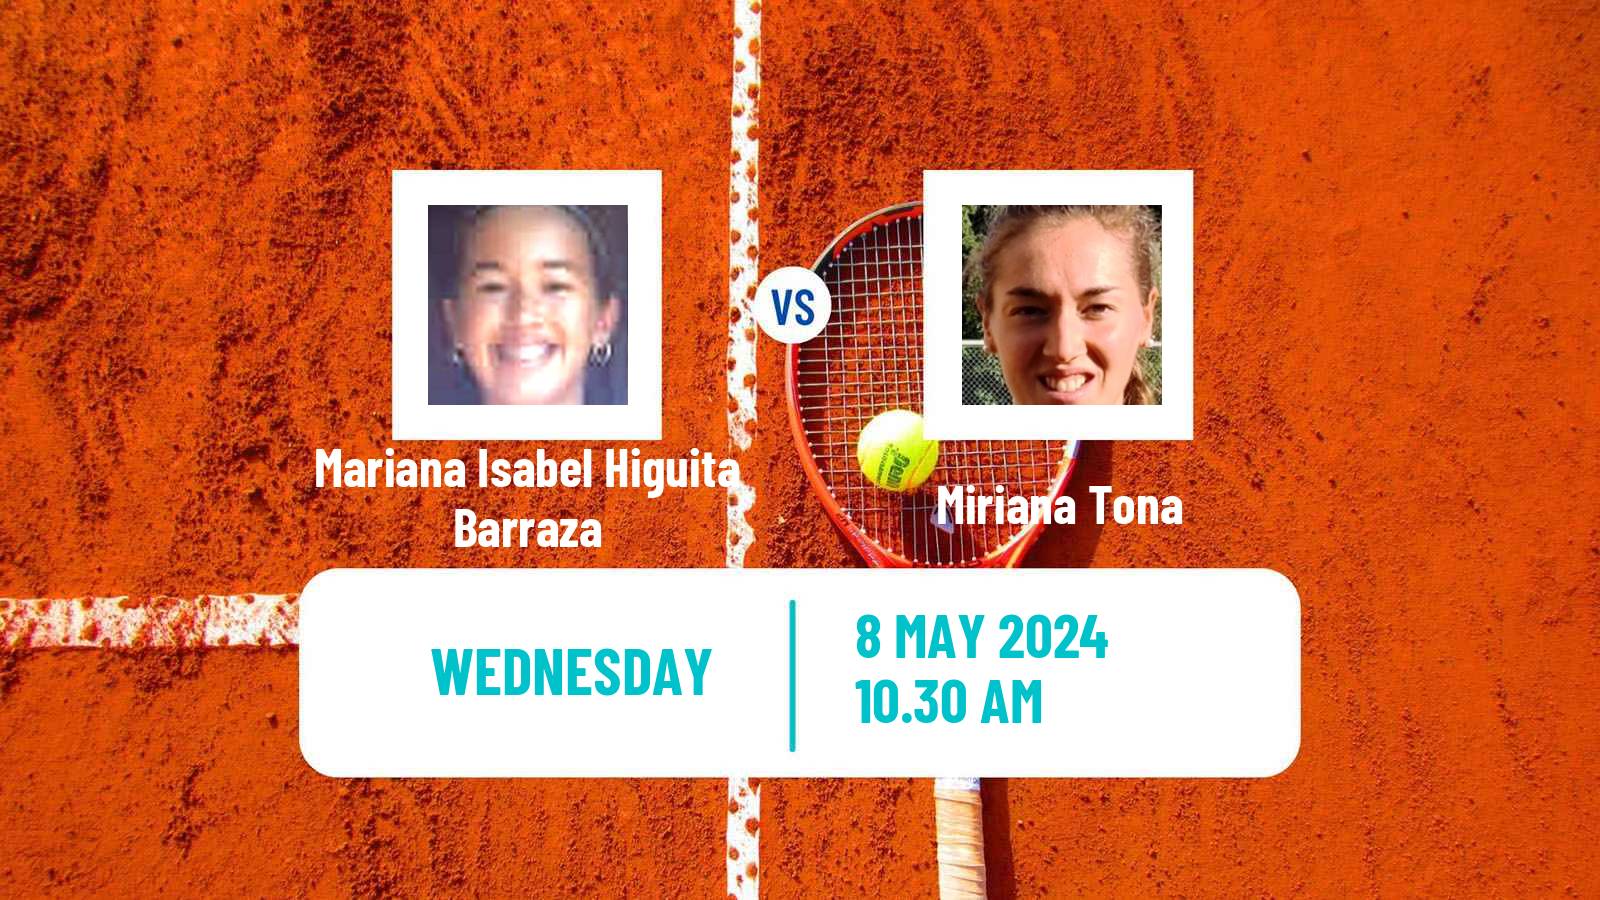 Tennis ITF W35 Sopo Women Mariana Isabel Higuita Barraza - Miriana Tona